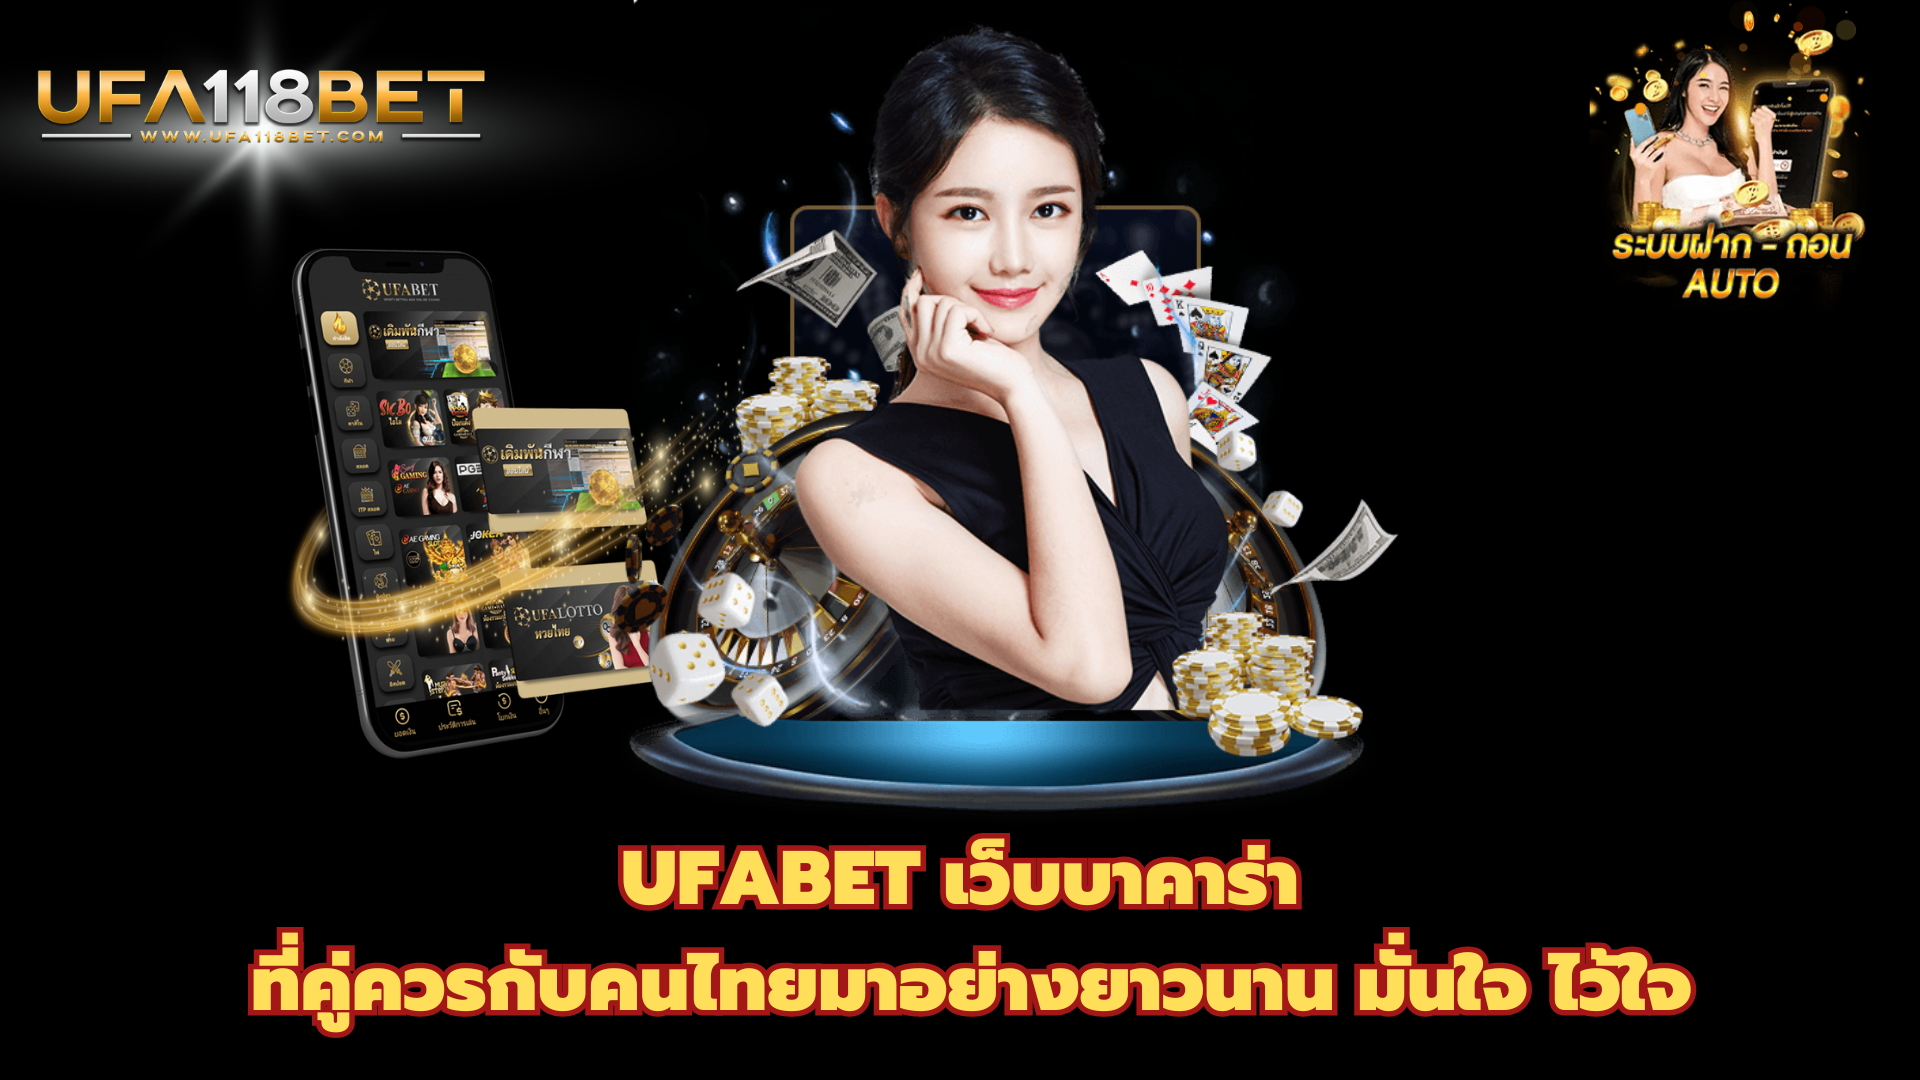 UFABET เว็บบาคาร่า ที่คู่ควรกับคนไทยมาอย่างยาวนาน มั่นใจ ไว้ใจ